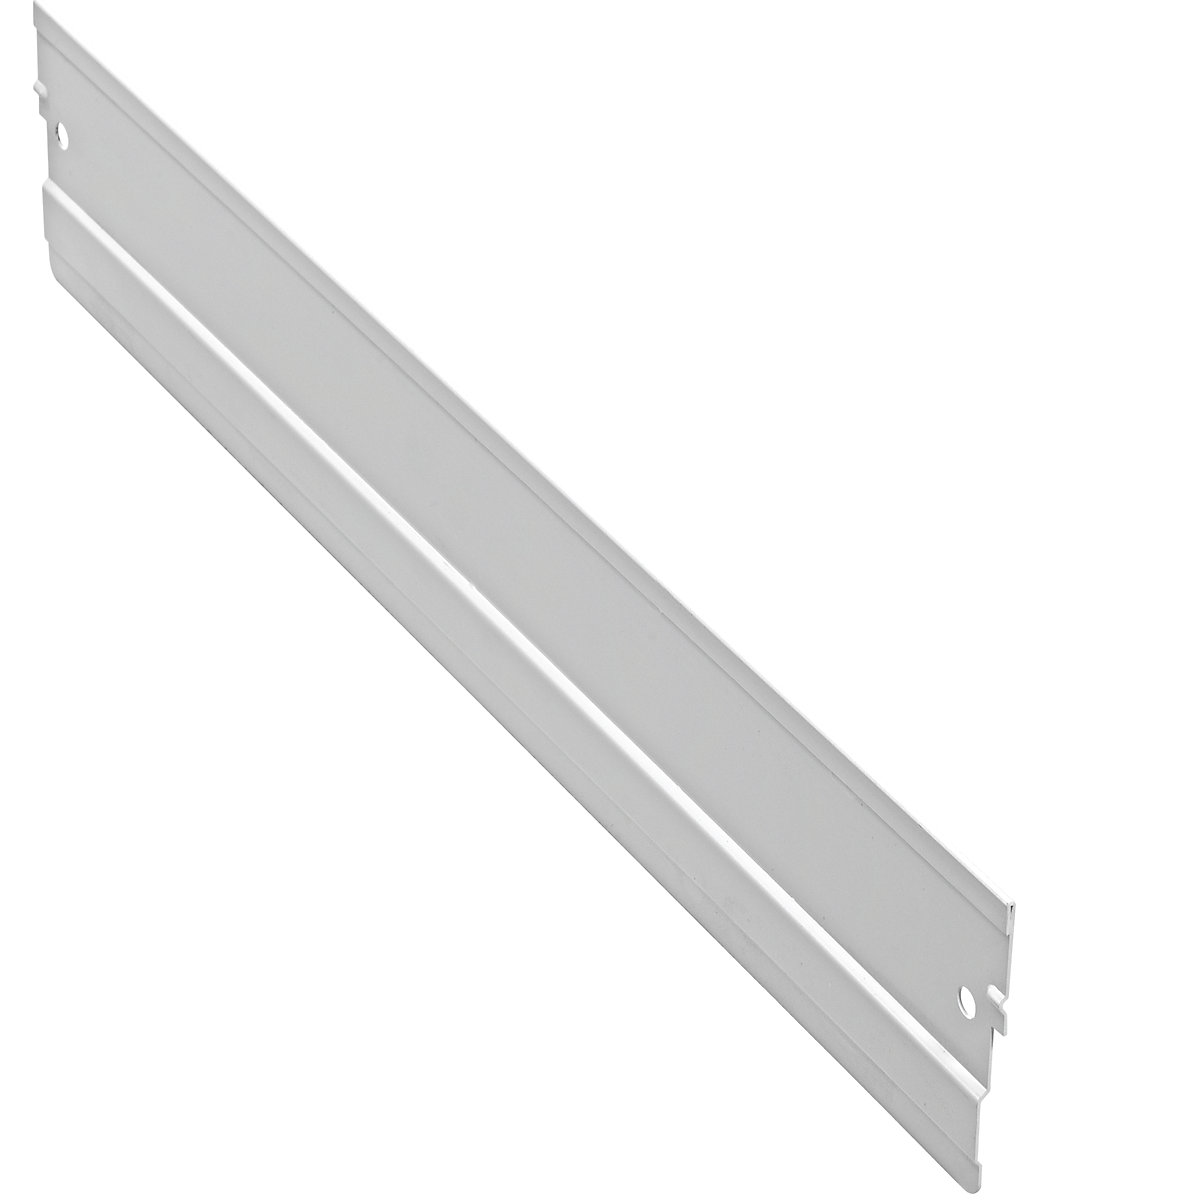 mauser – Przegroda wzdłużna, szara, do dł. x wys. 500 x 90 mm, opak. 10 szt.